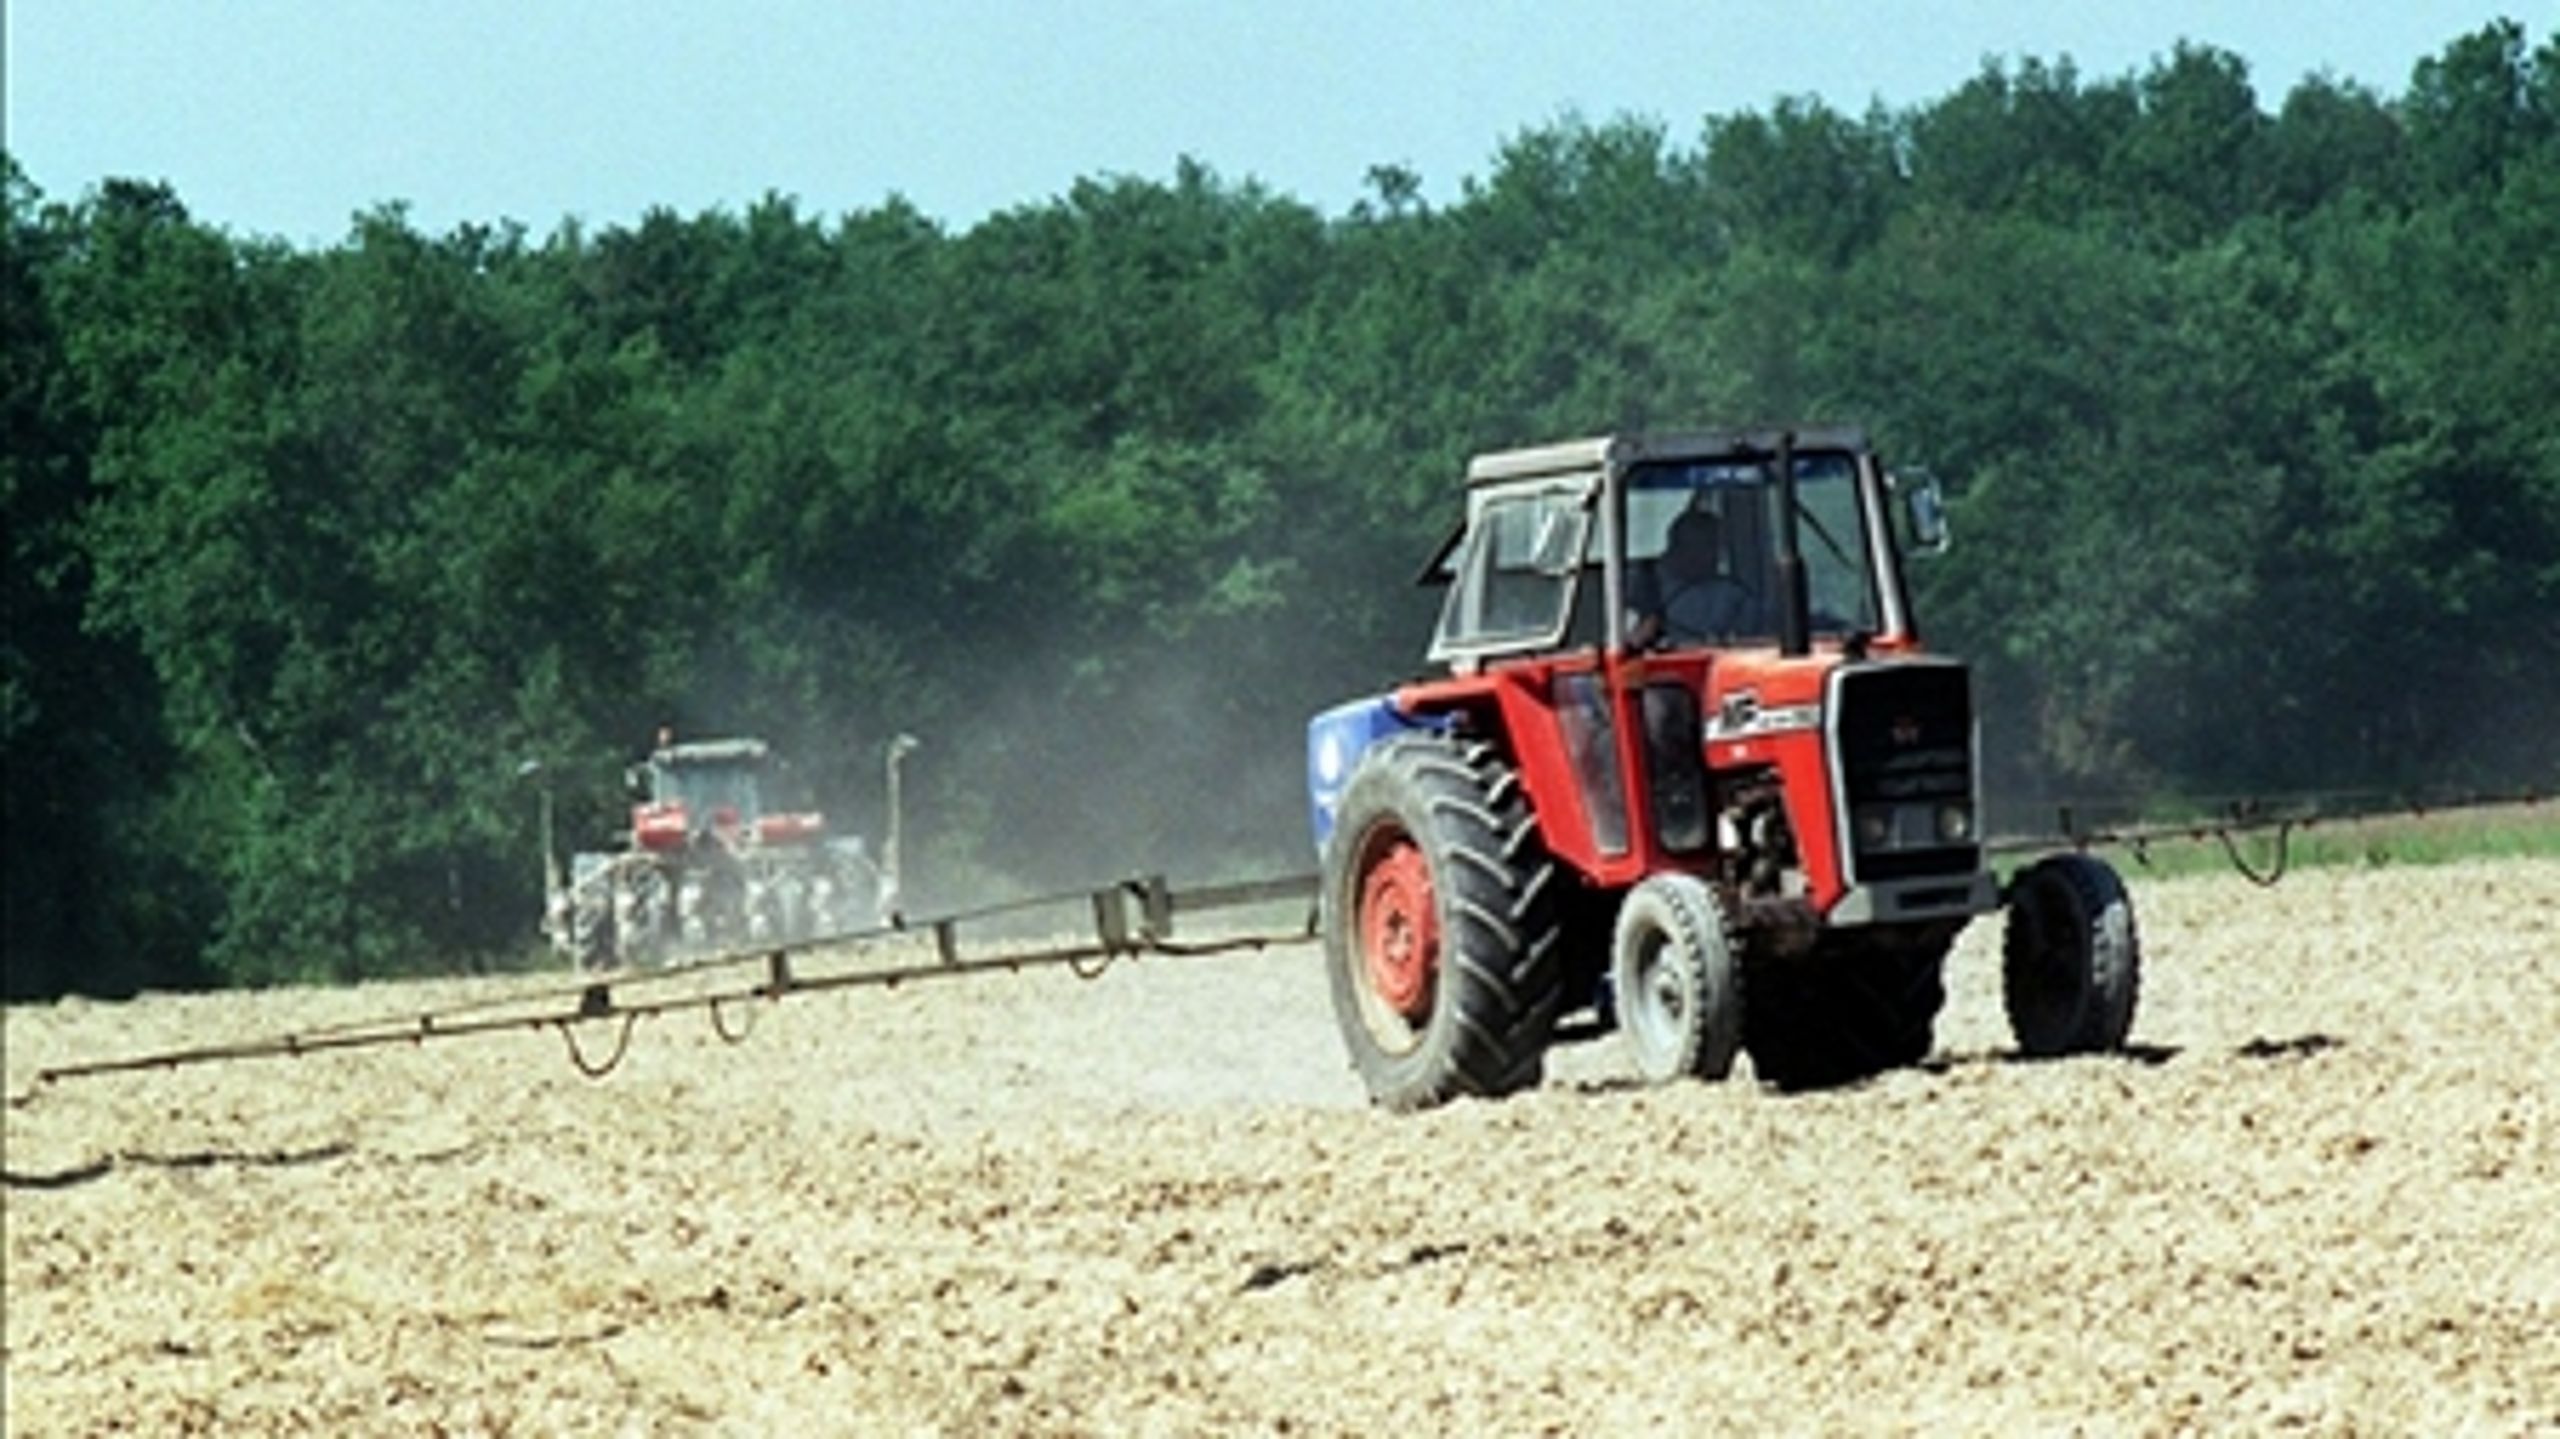 Danmark stemmer nej til et forslag om at ændre i maksimalgrænseværdierne for pesticidrester.